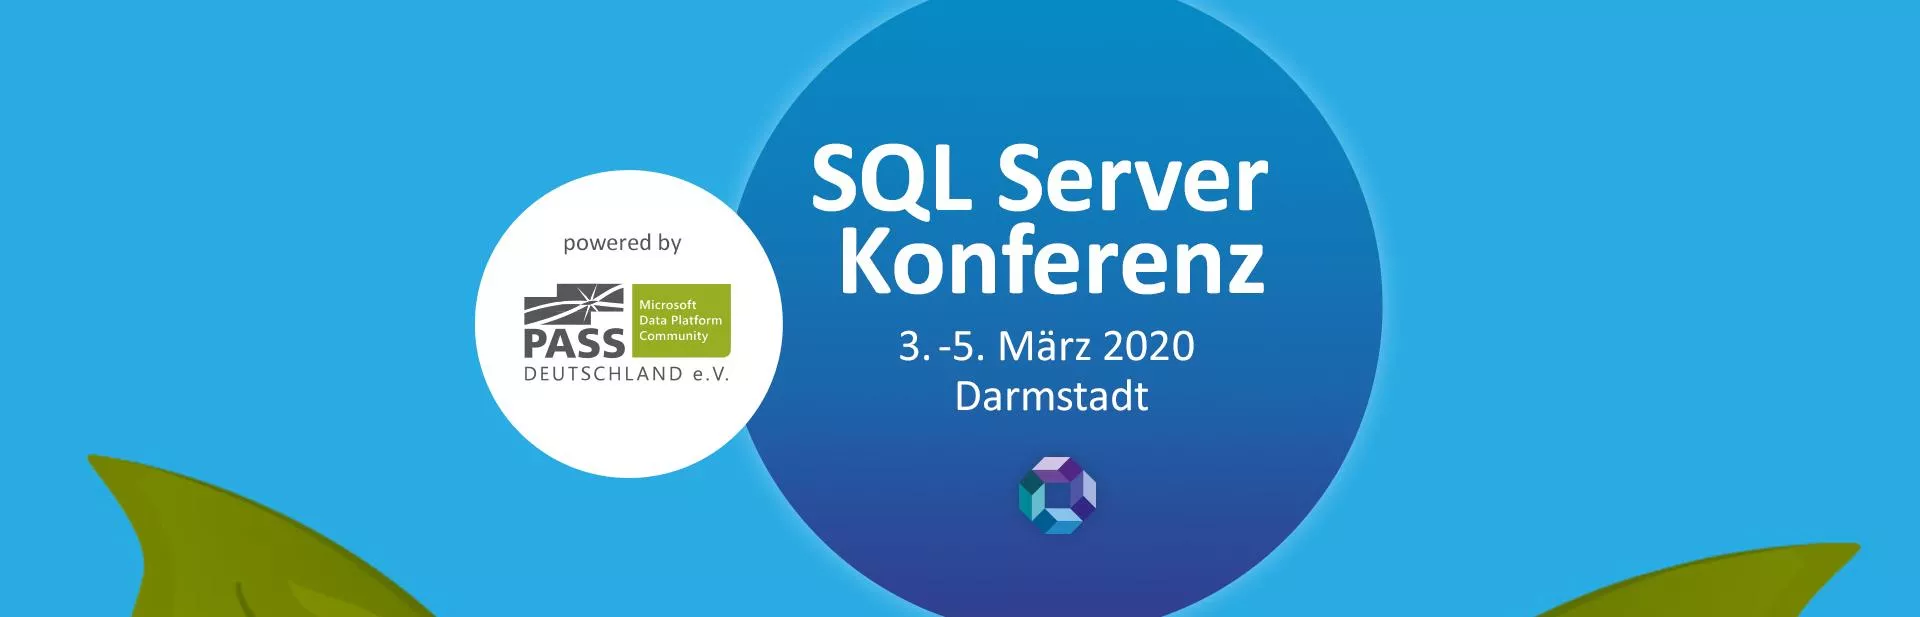 sql-server-conference-event